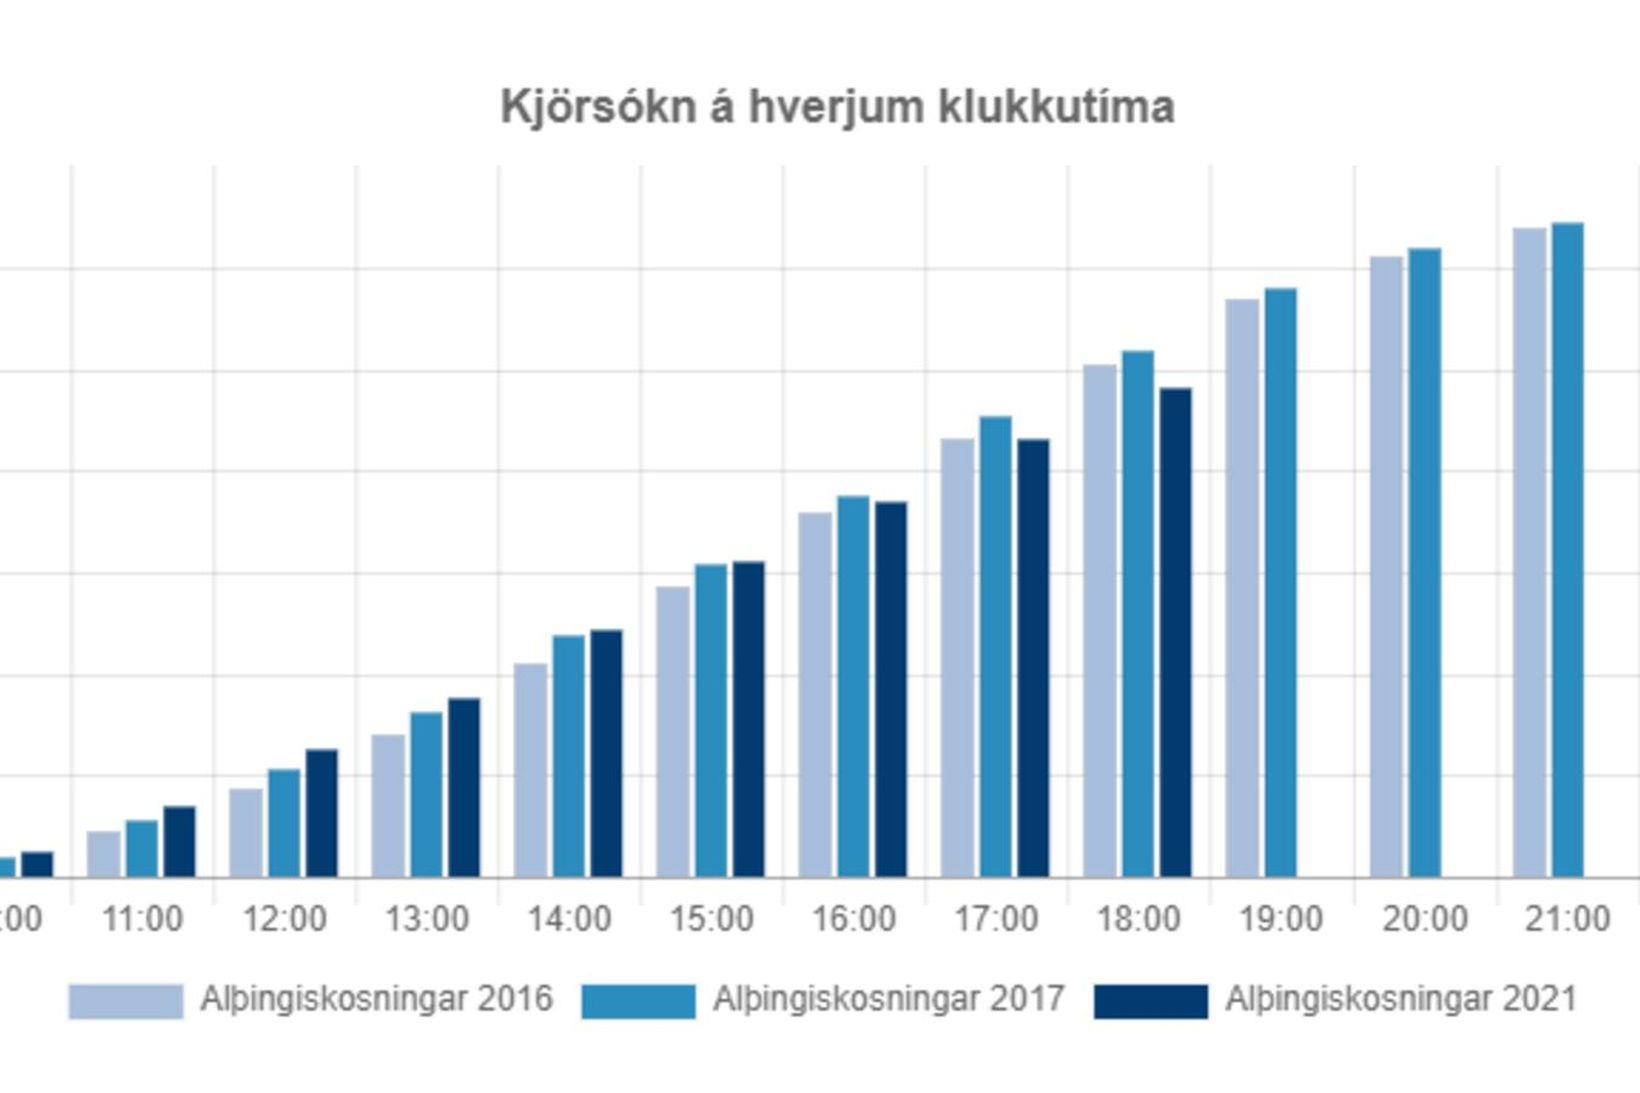 Graf sem sýnir kjörsókn á hverjum klukkutíma í báðum Reykjavíkurkjördæmunum.